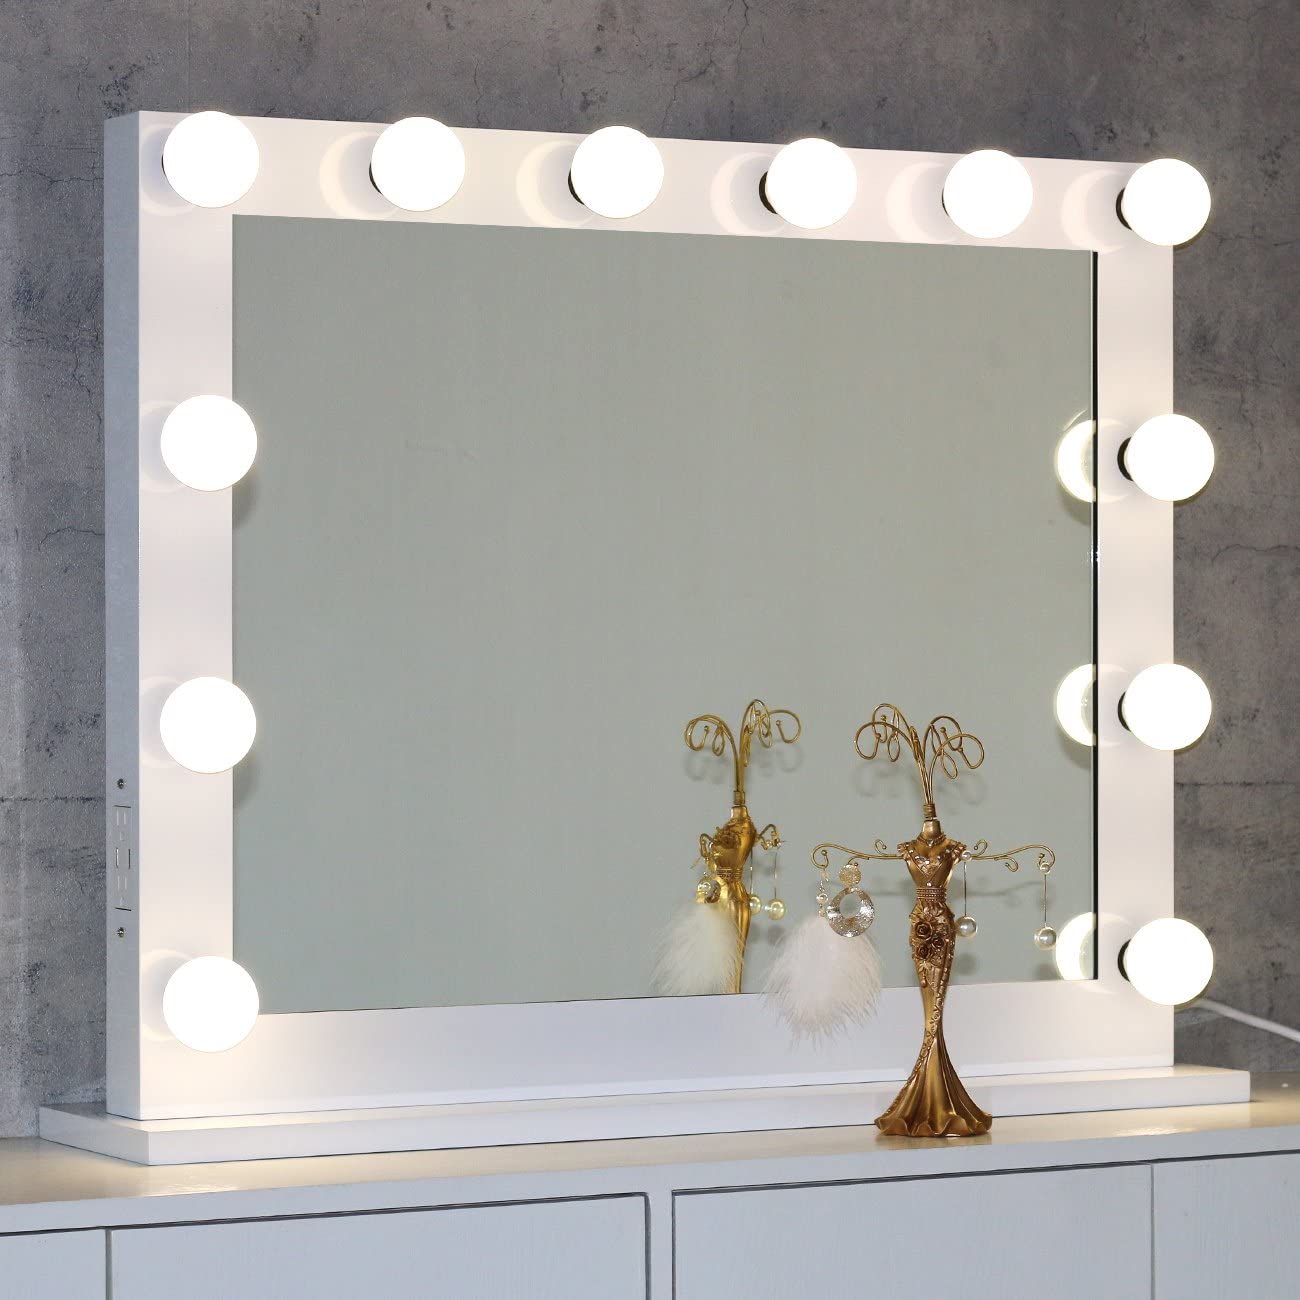 Top 7 Best Light Up Vanity Mirrors, Light For Vanity Mirror